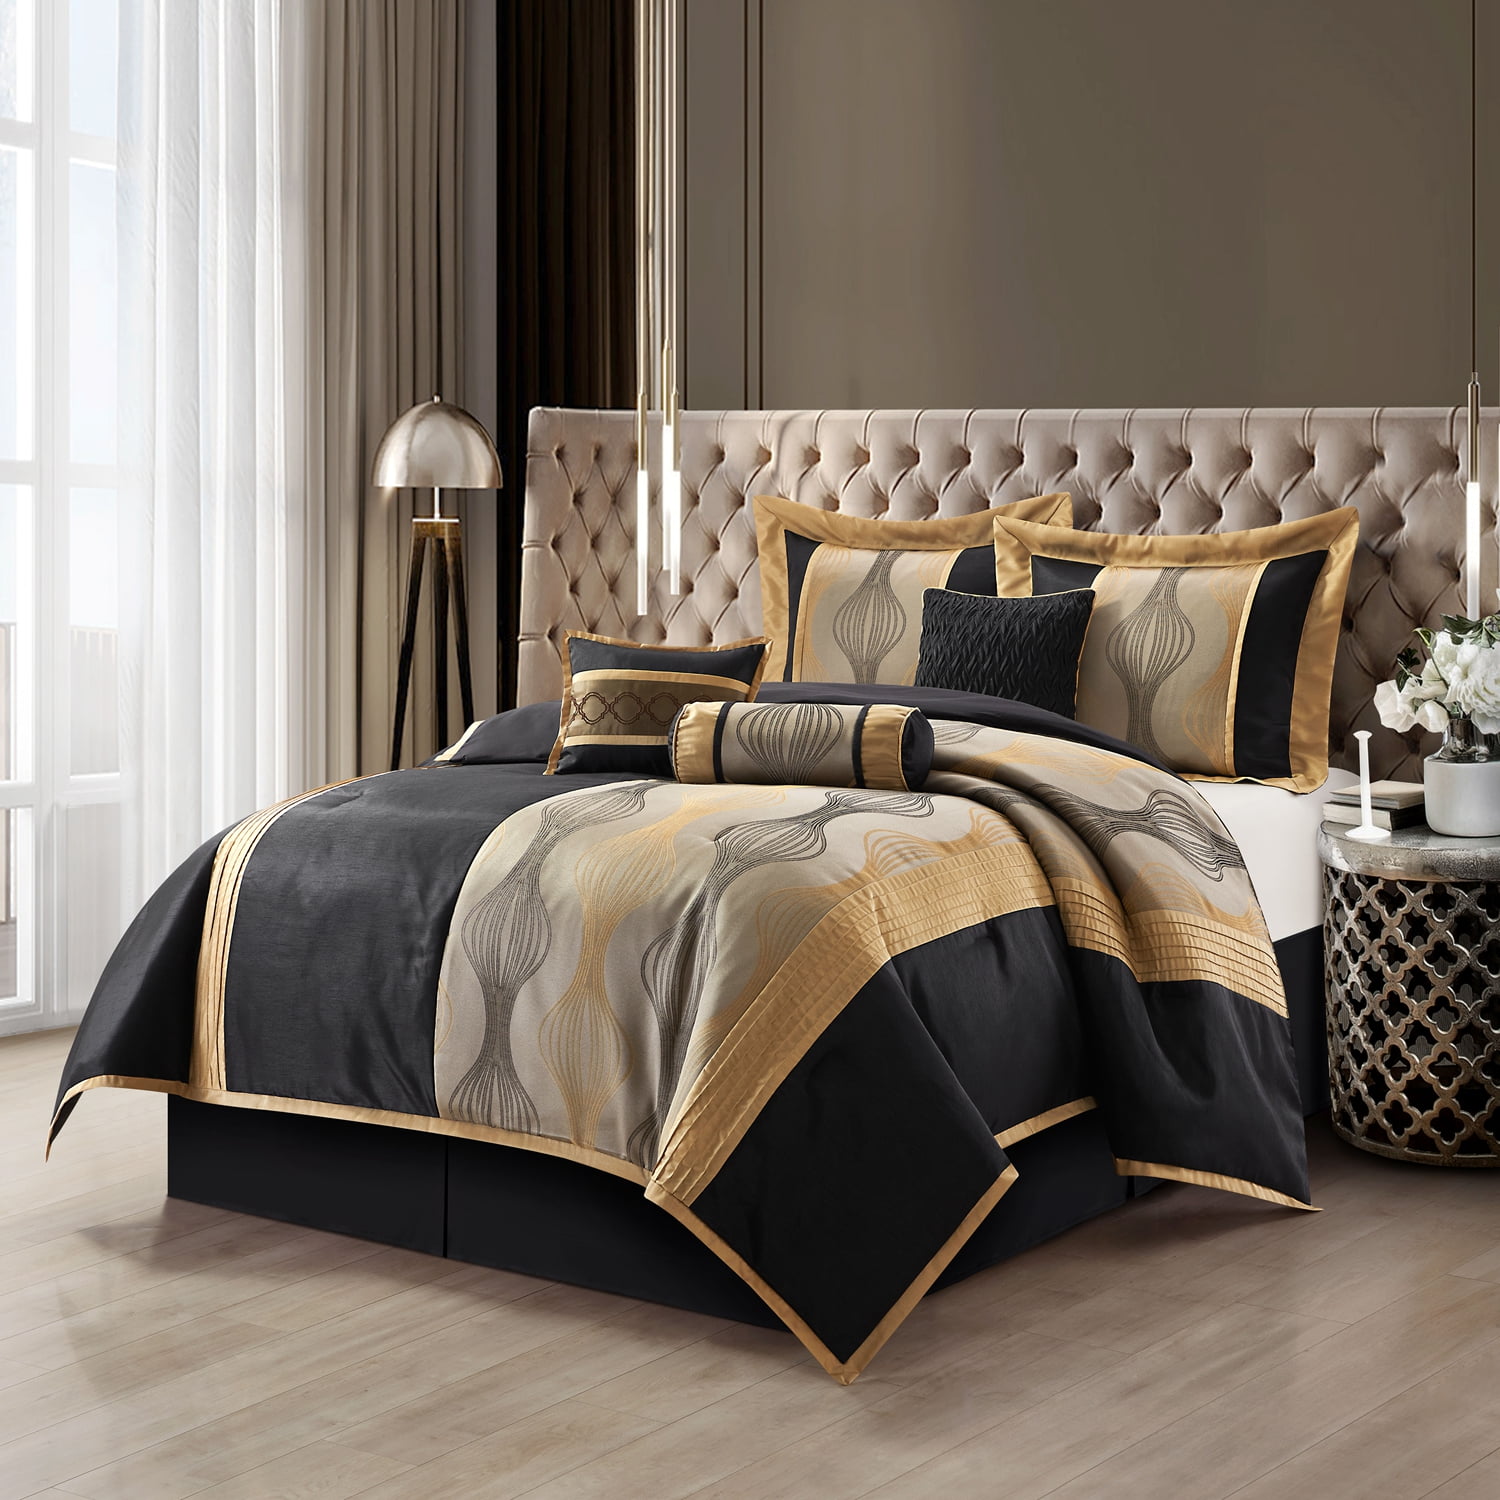 Lanco Black Gold Comforter Set Queen Size 7 Pieces Fashion Jacquard